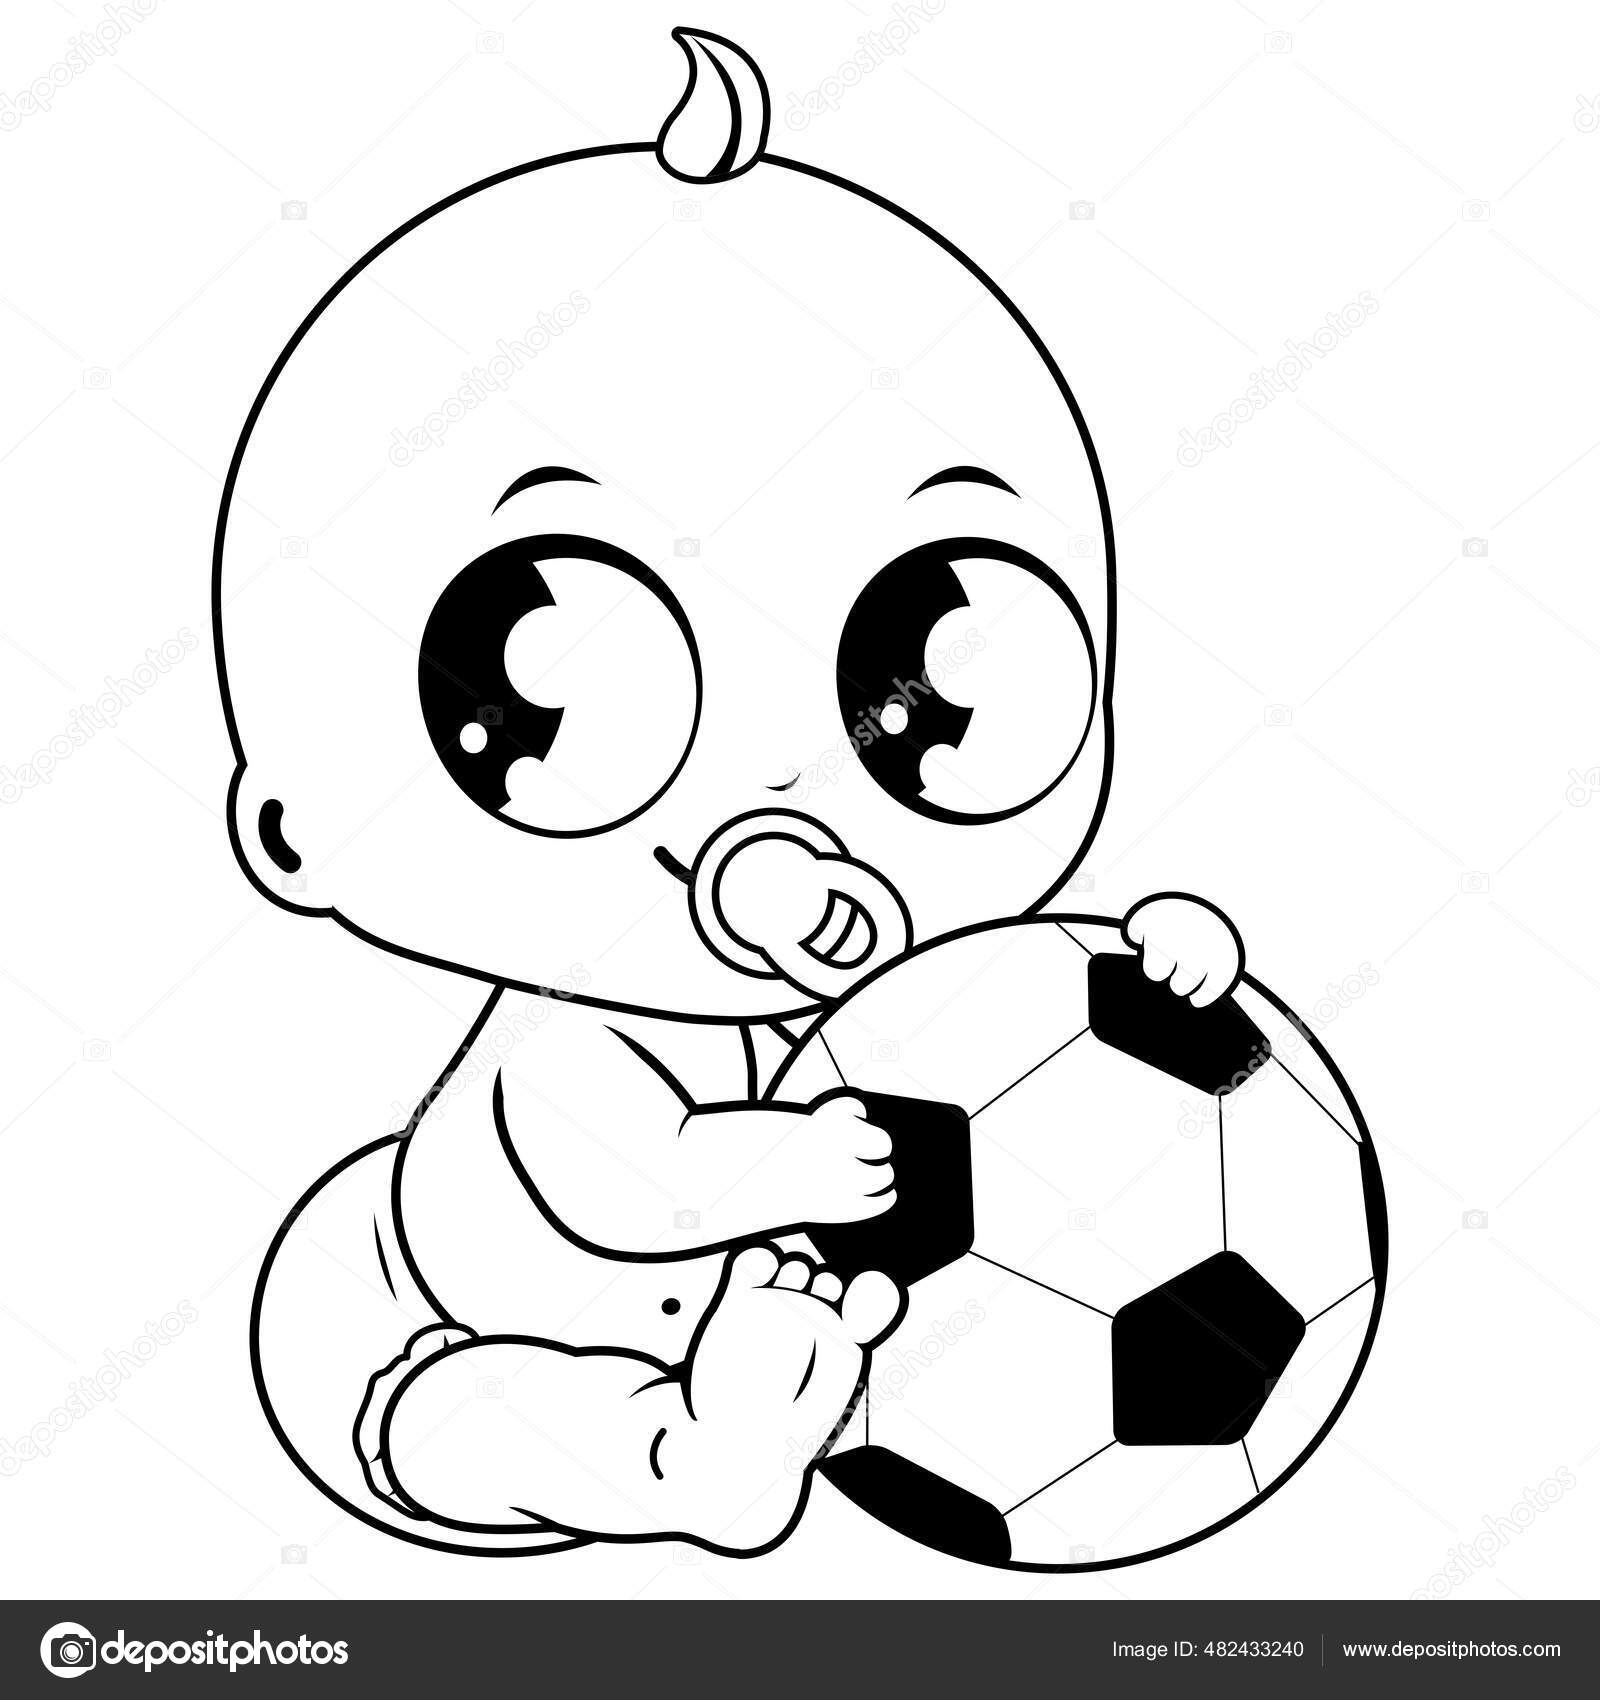 Desenho Para Colorir Com Menino Jogando Futebol Desenho Arte Linha  vetor(es) de stock de ©Sybirko 428463212